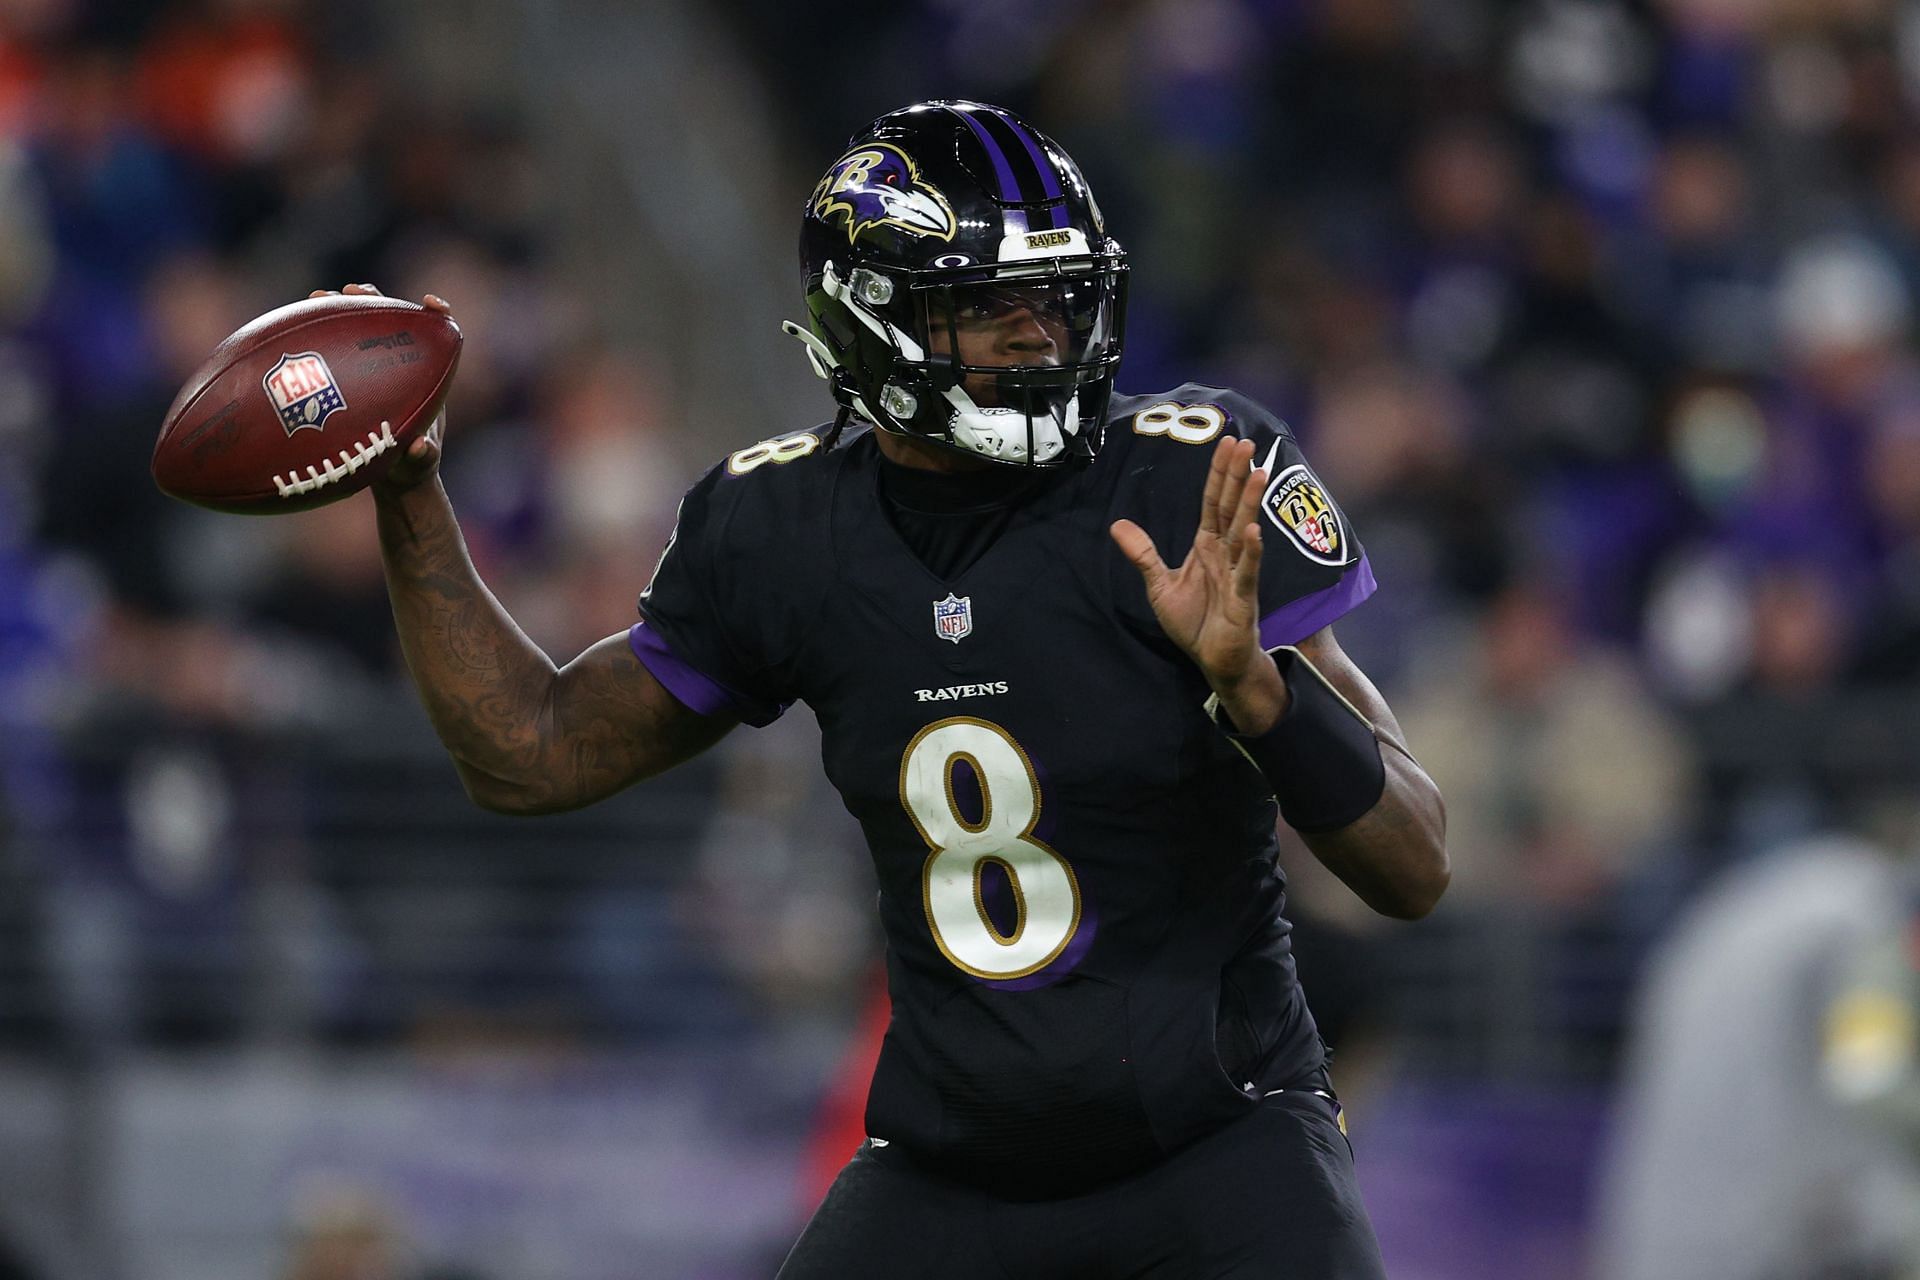 Keep Lamar Jackson in Baltimore' - Ravens fans hilariously set up